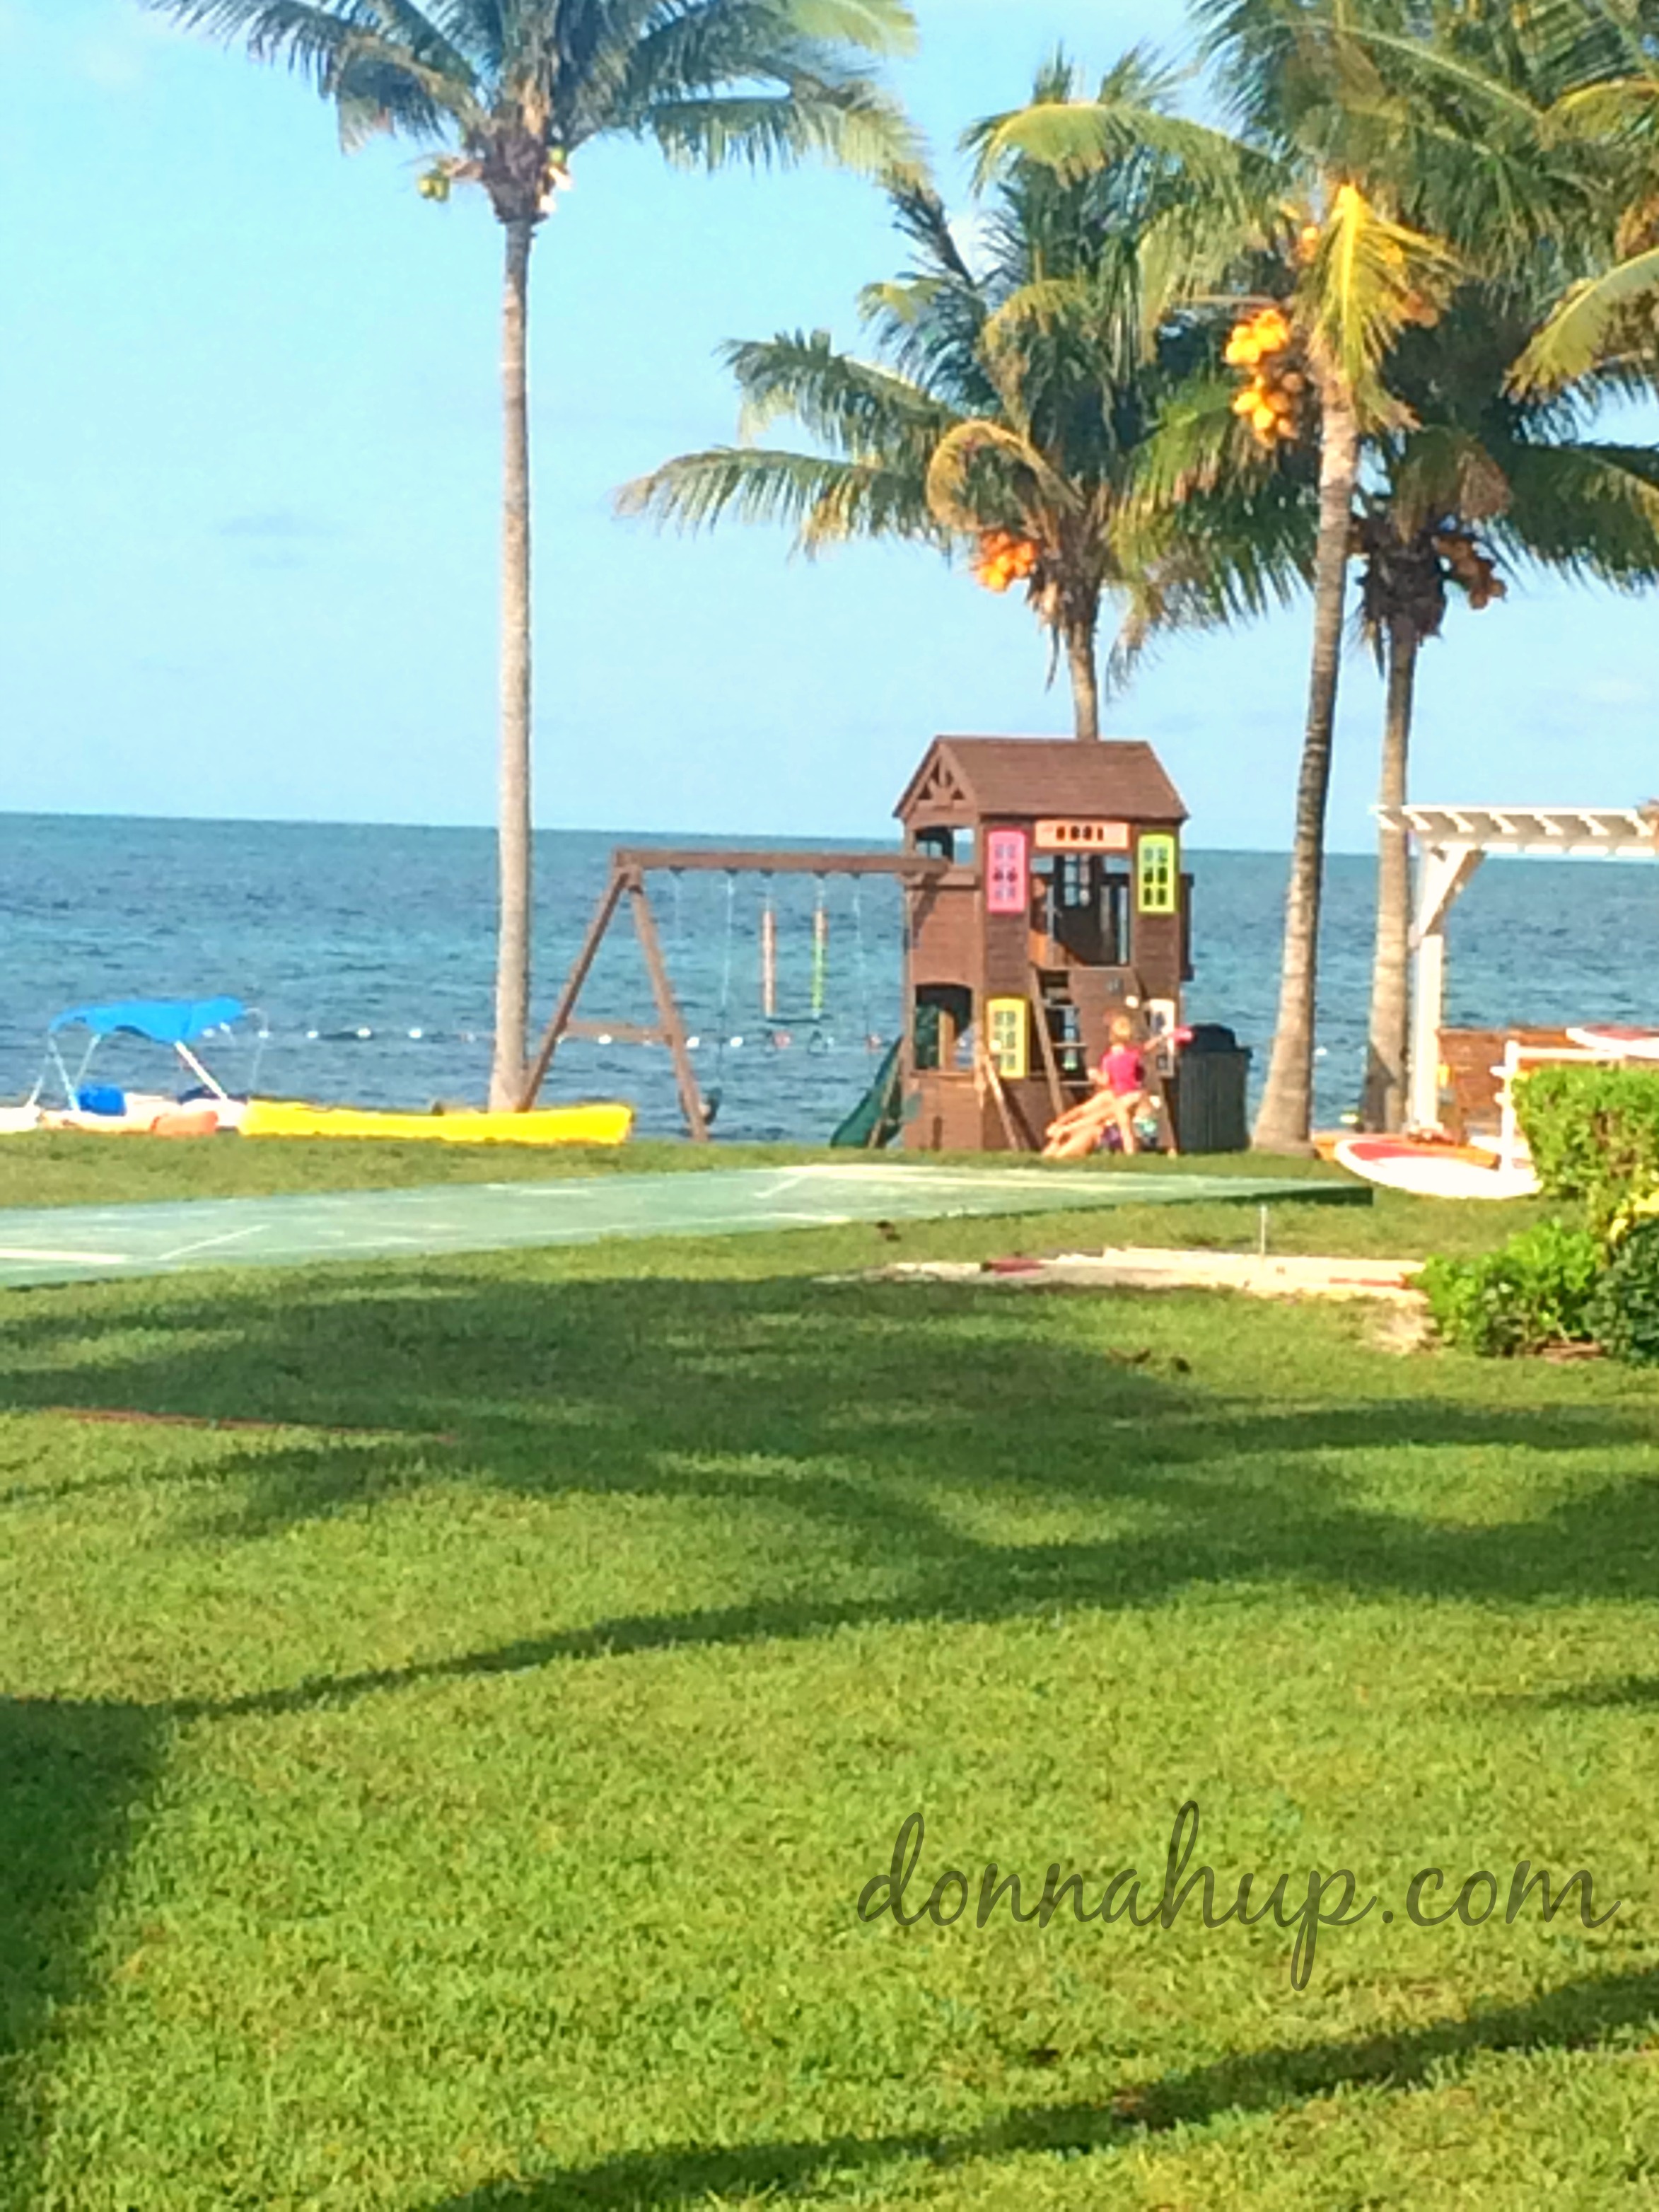 Best Hotel in Bahamas? Old Bahama Bay!